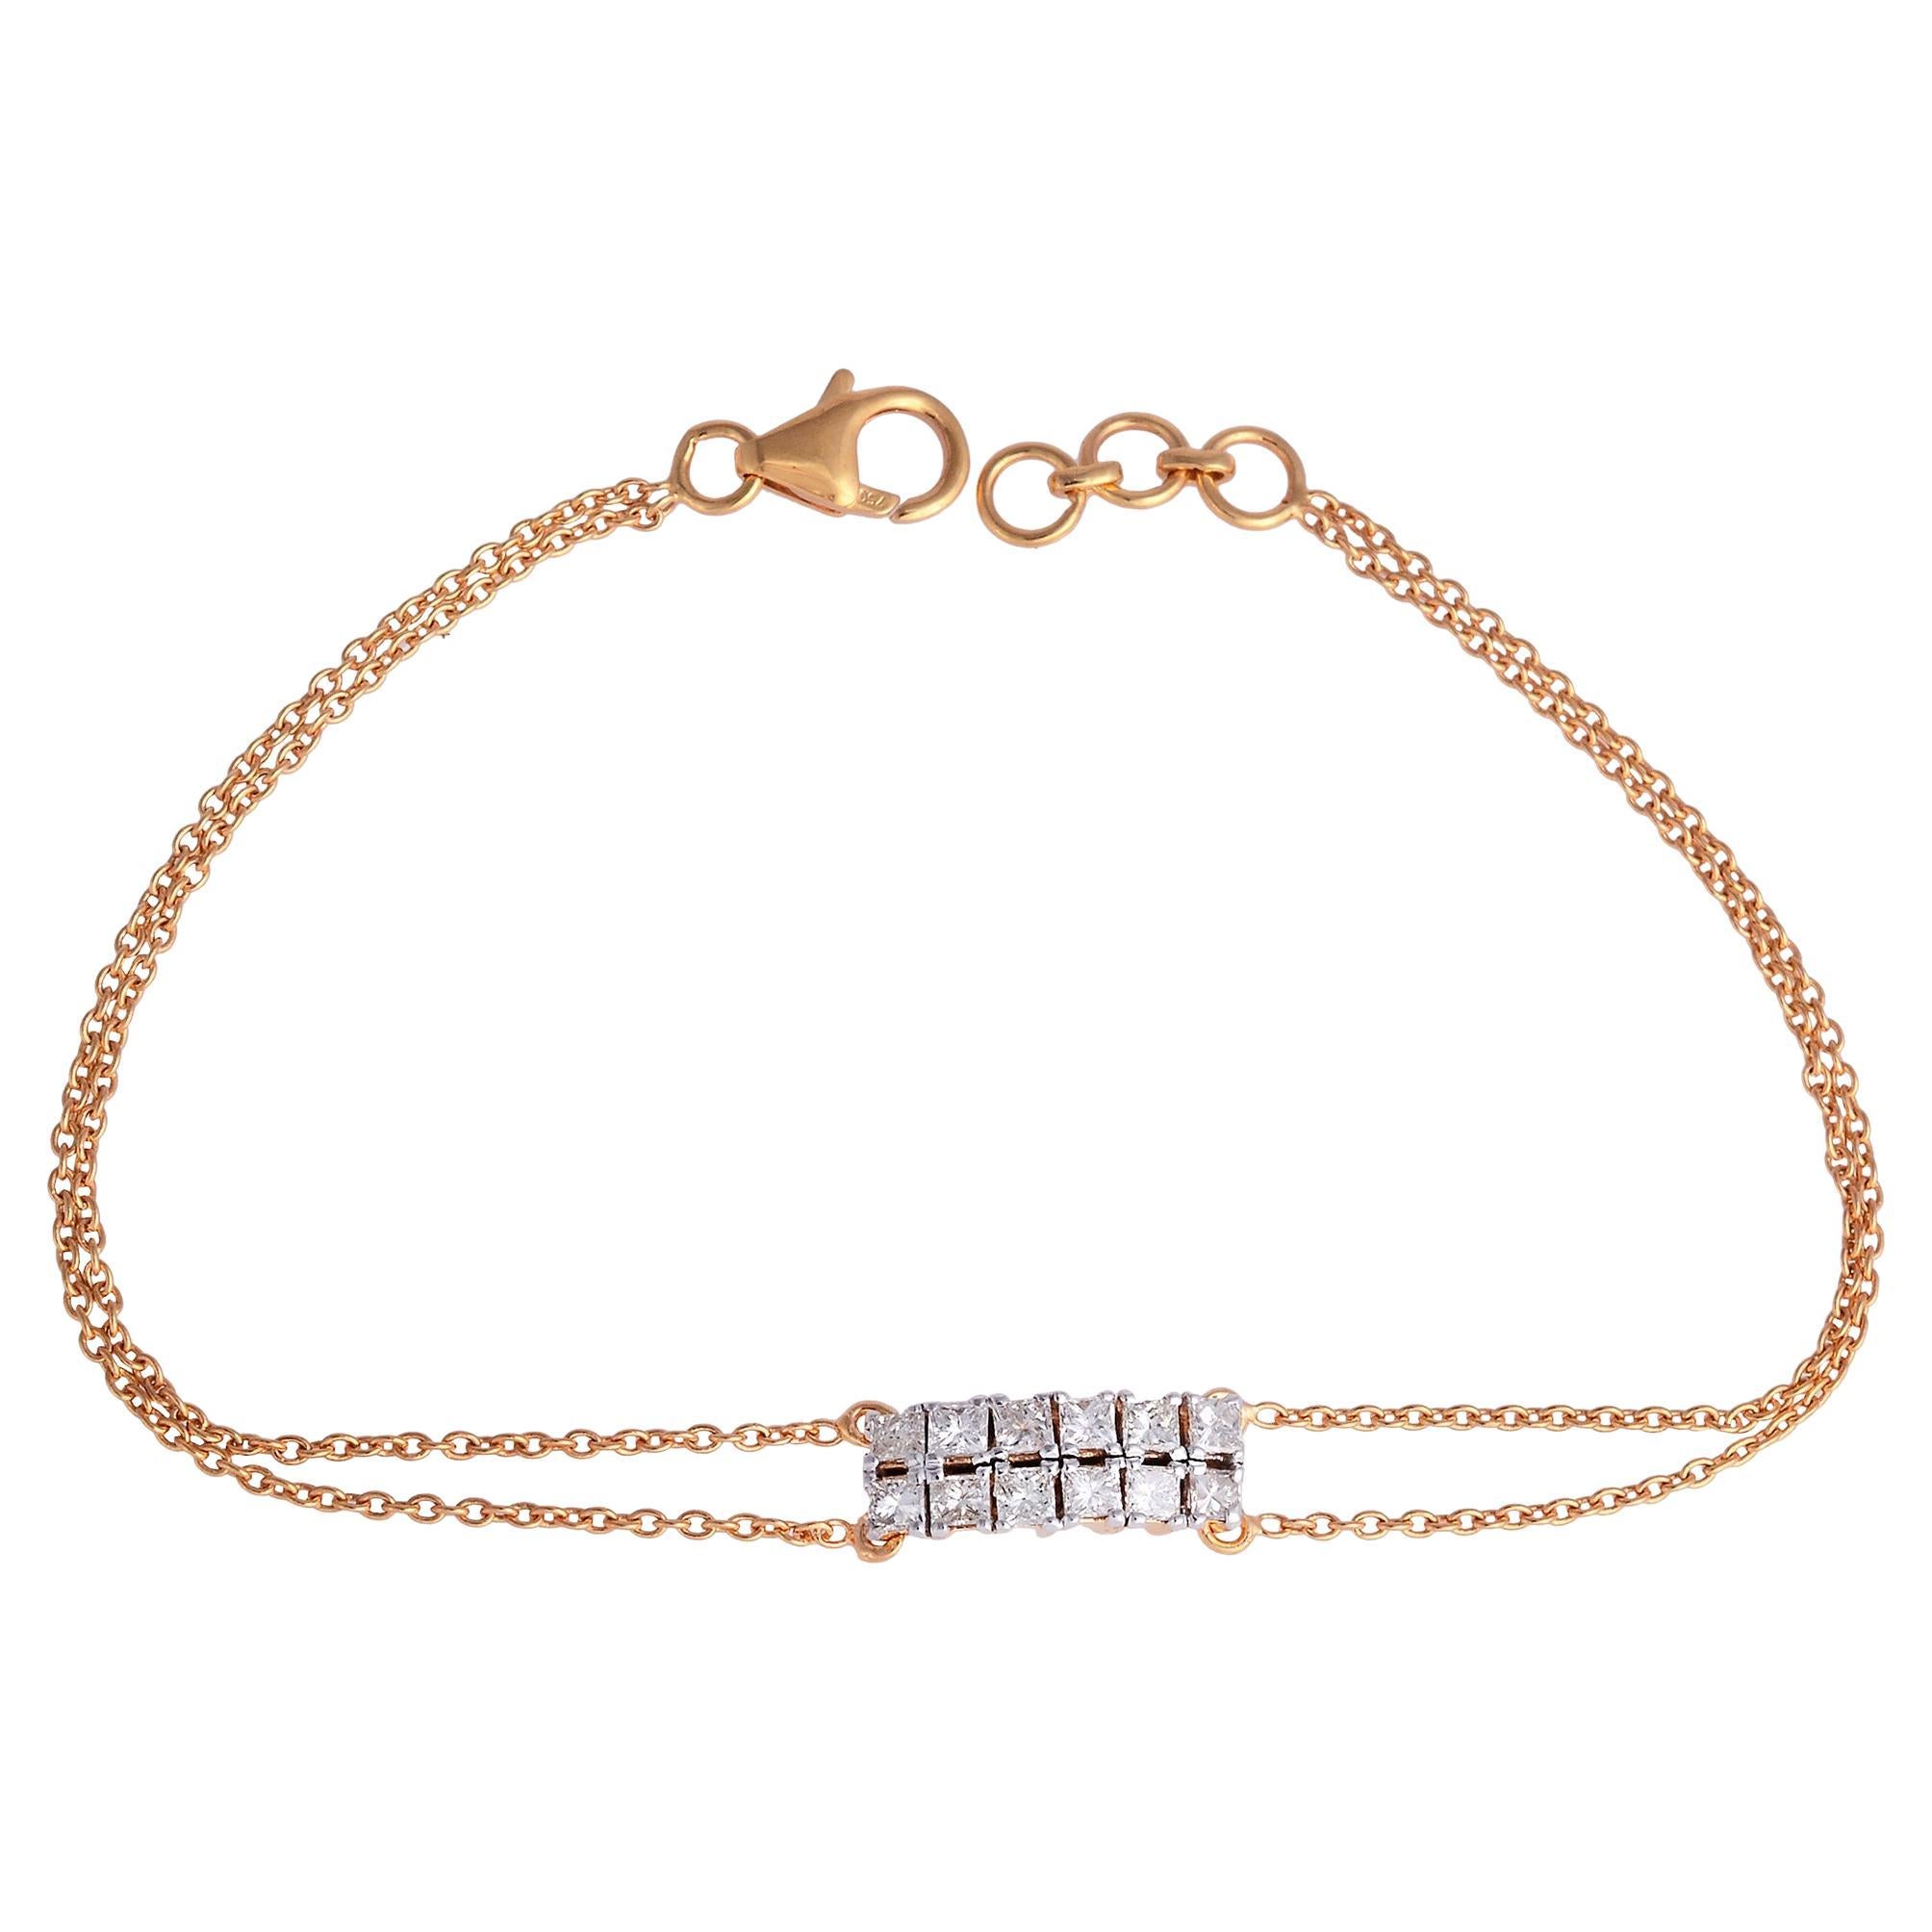 0.90 Carat Princess Cut Diamond Bracelet Solid 18 Karat Rose Gold Fine Jewelry For Sale